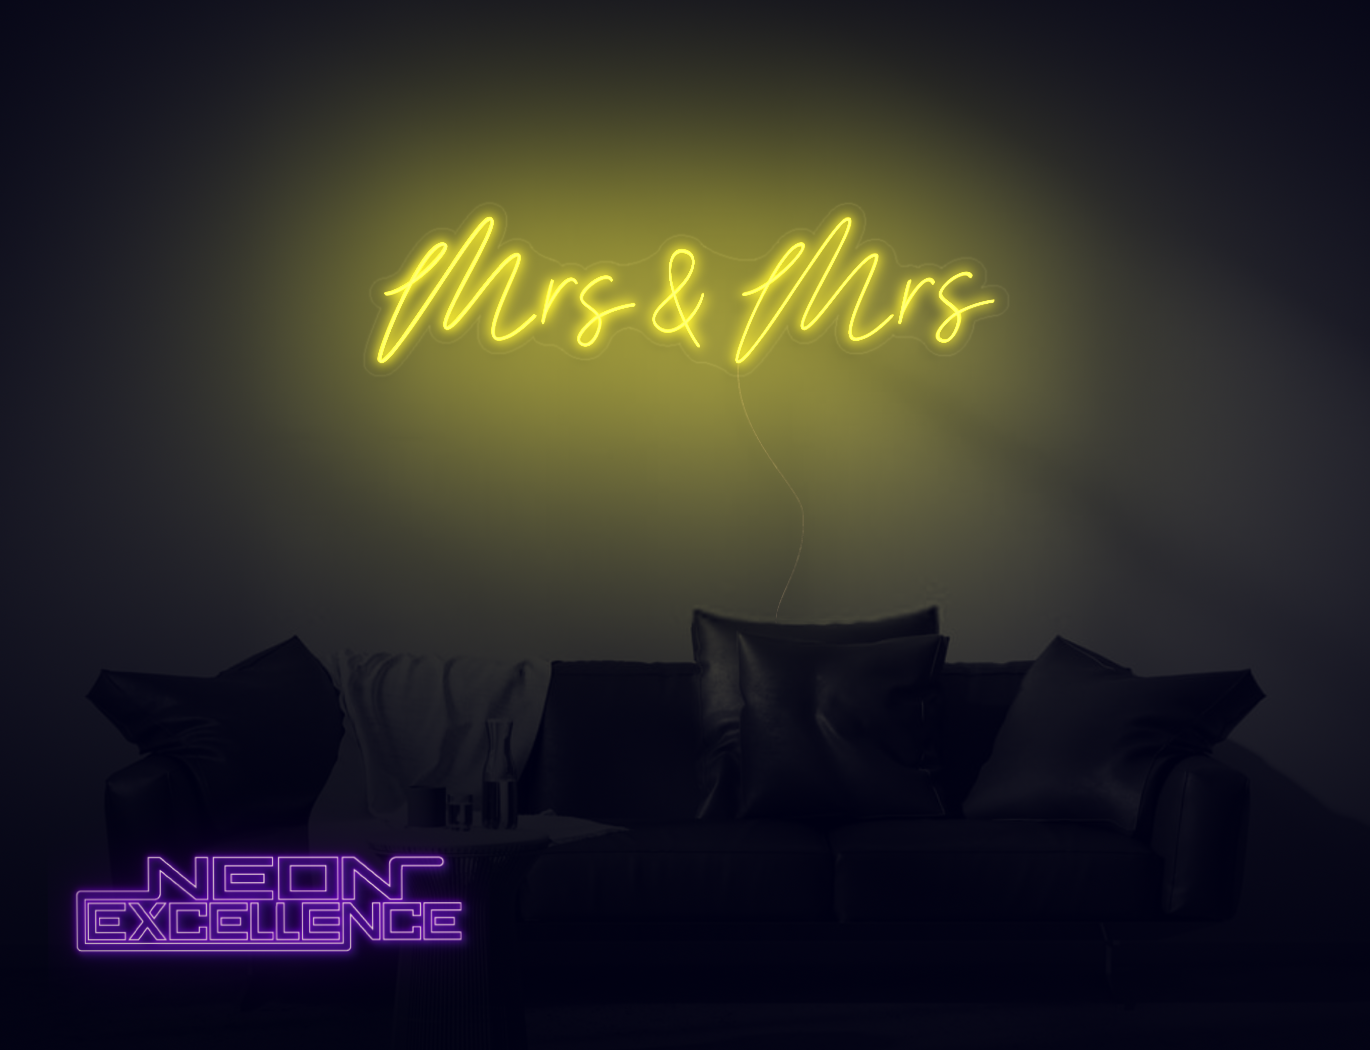 Mrs & Mrs LED Neon Sign